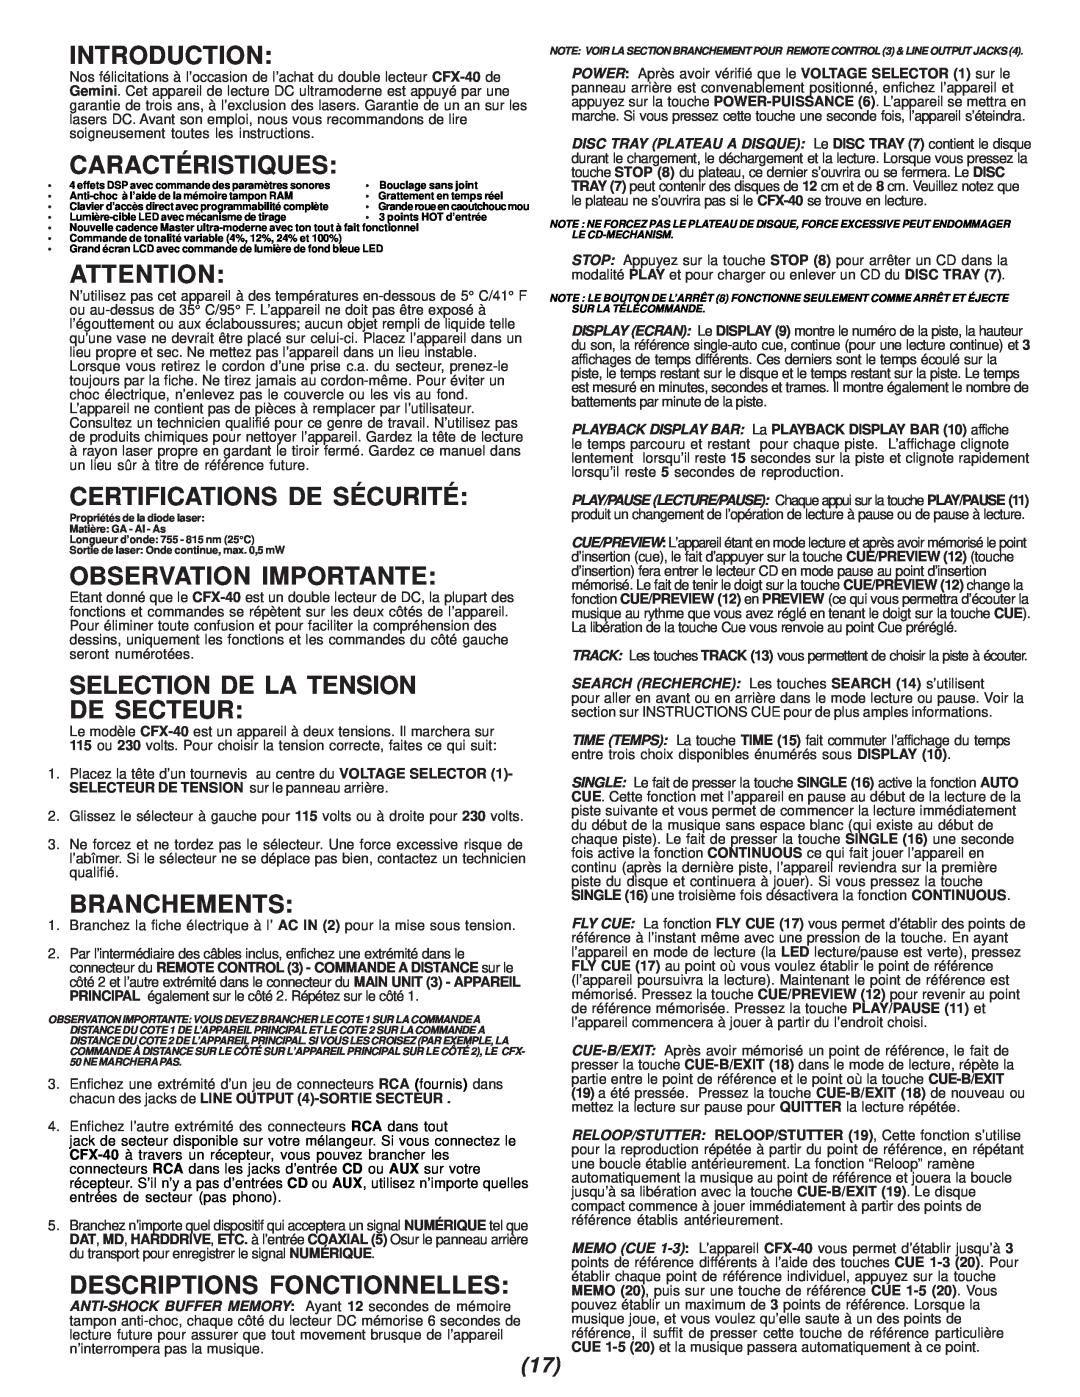 Gemini CFX-40 Caractéristiques, Certifications De Sécurité, Observation Importante, Selection De La Tension De Secteur 